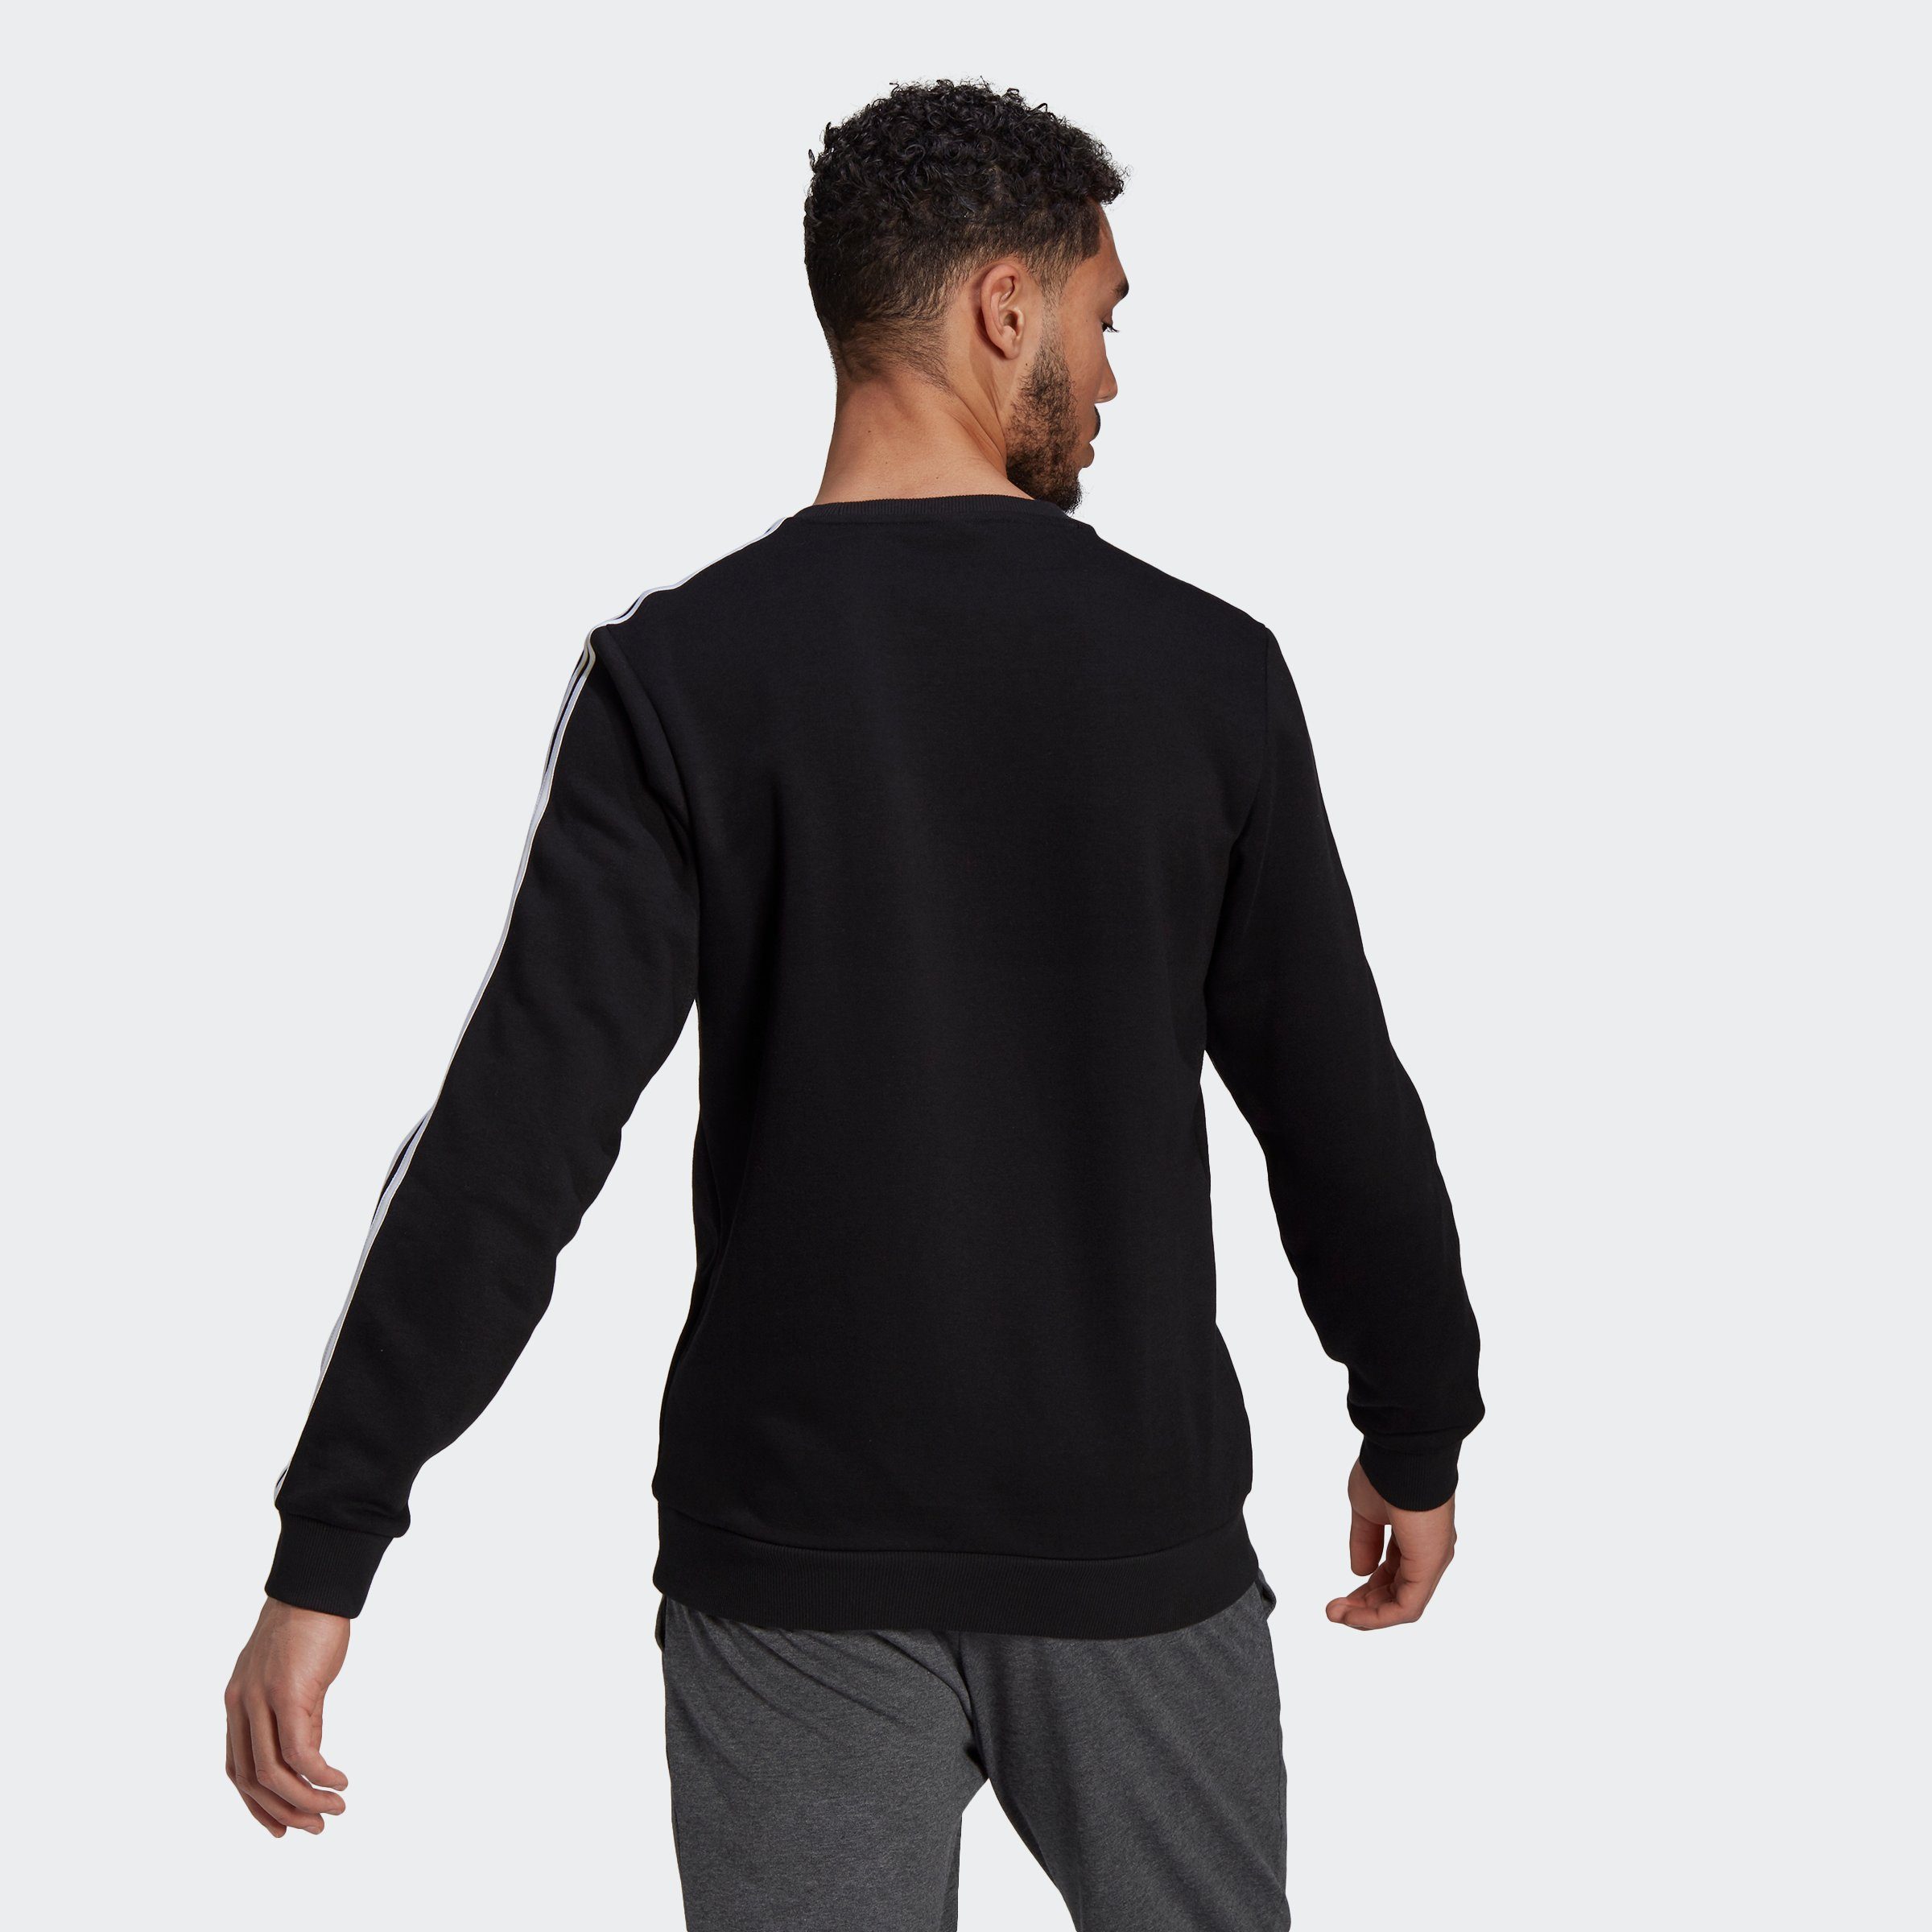 ESSENTIALS adidas FLEECE Sportswear Sweatshirt 3-STREIFEN